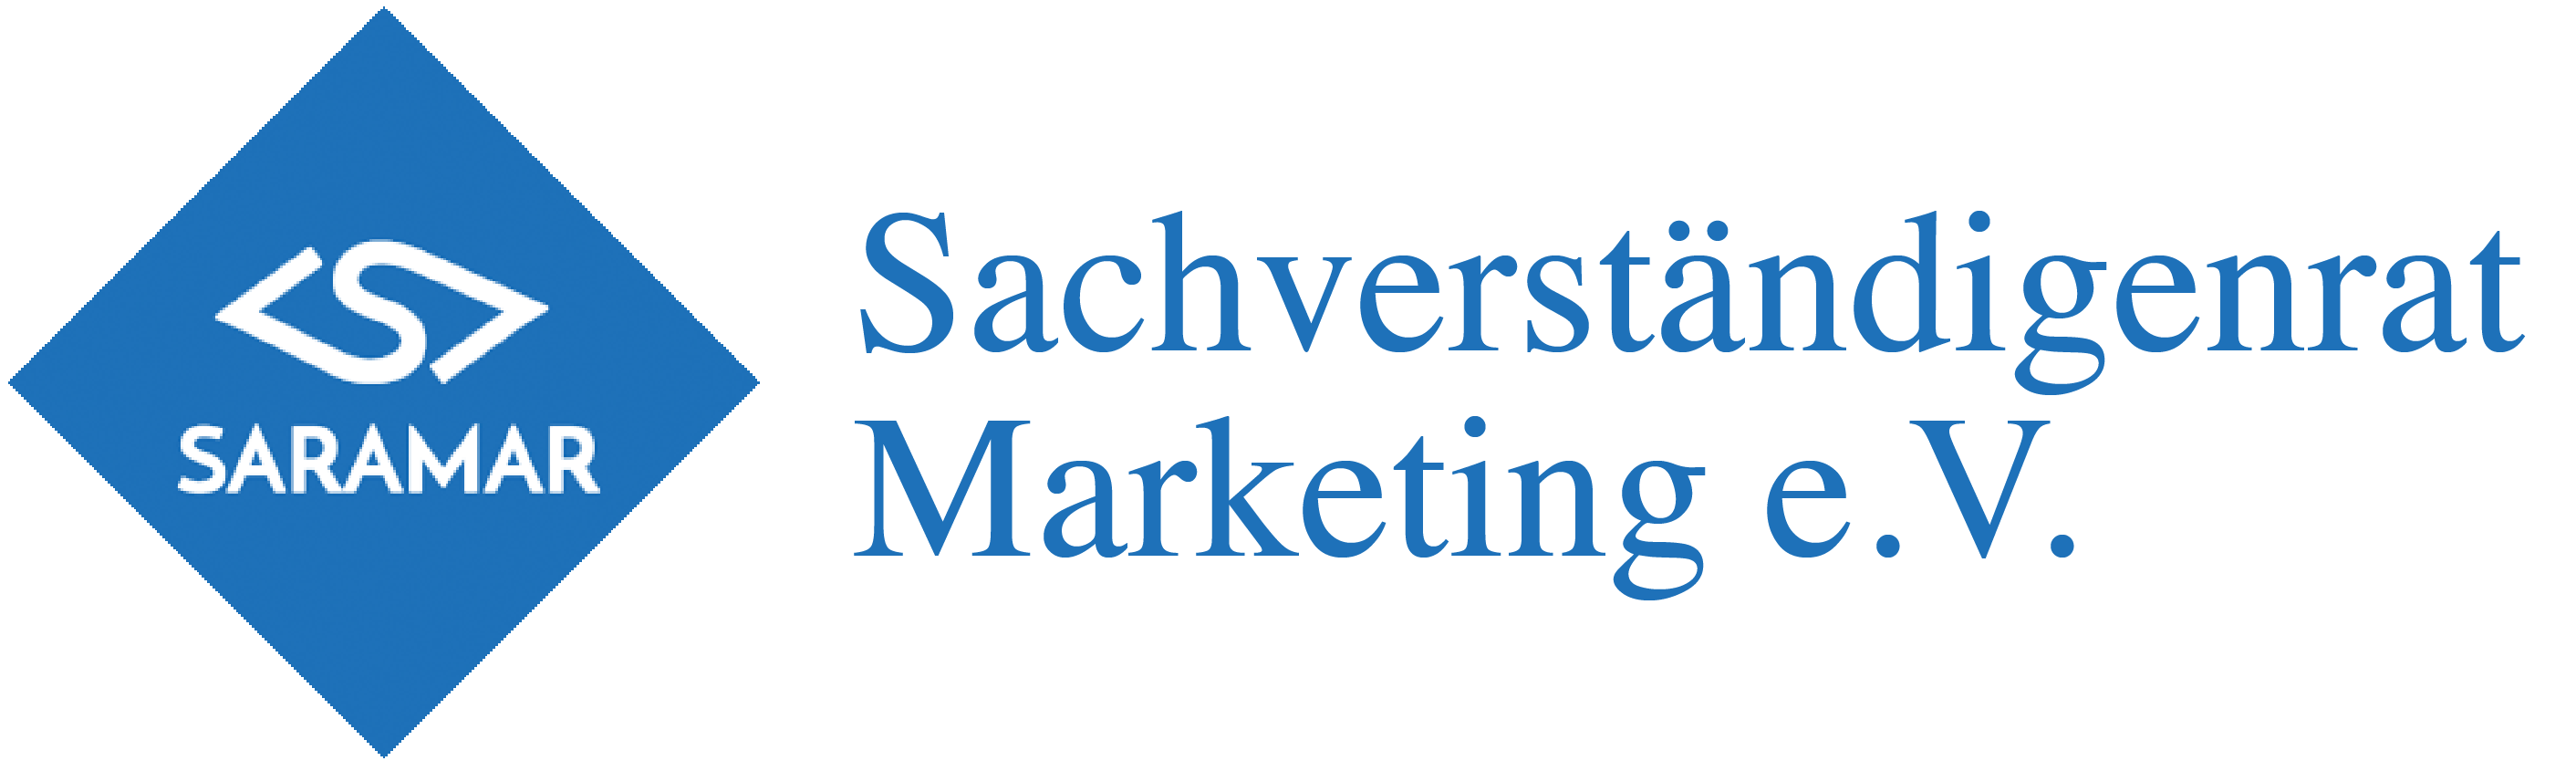 Mitgliedschaft/Zertifizierung SARAMAR Sachverständigenrat Marketing e.V.